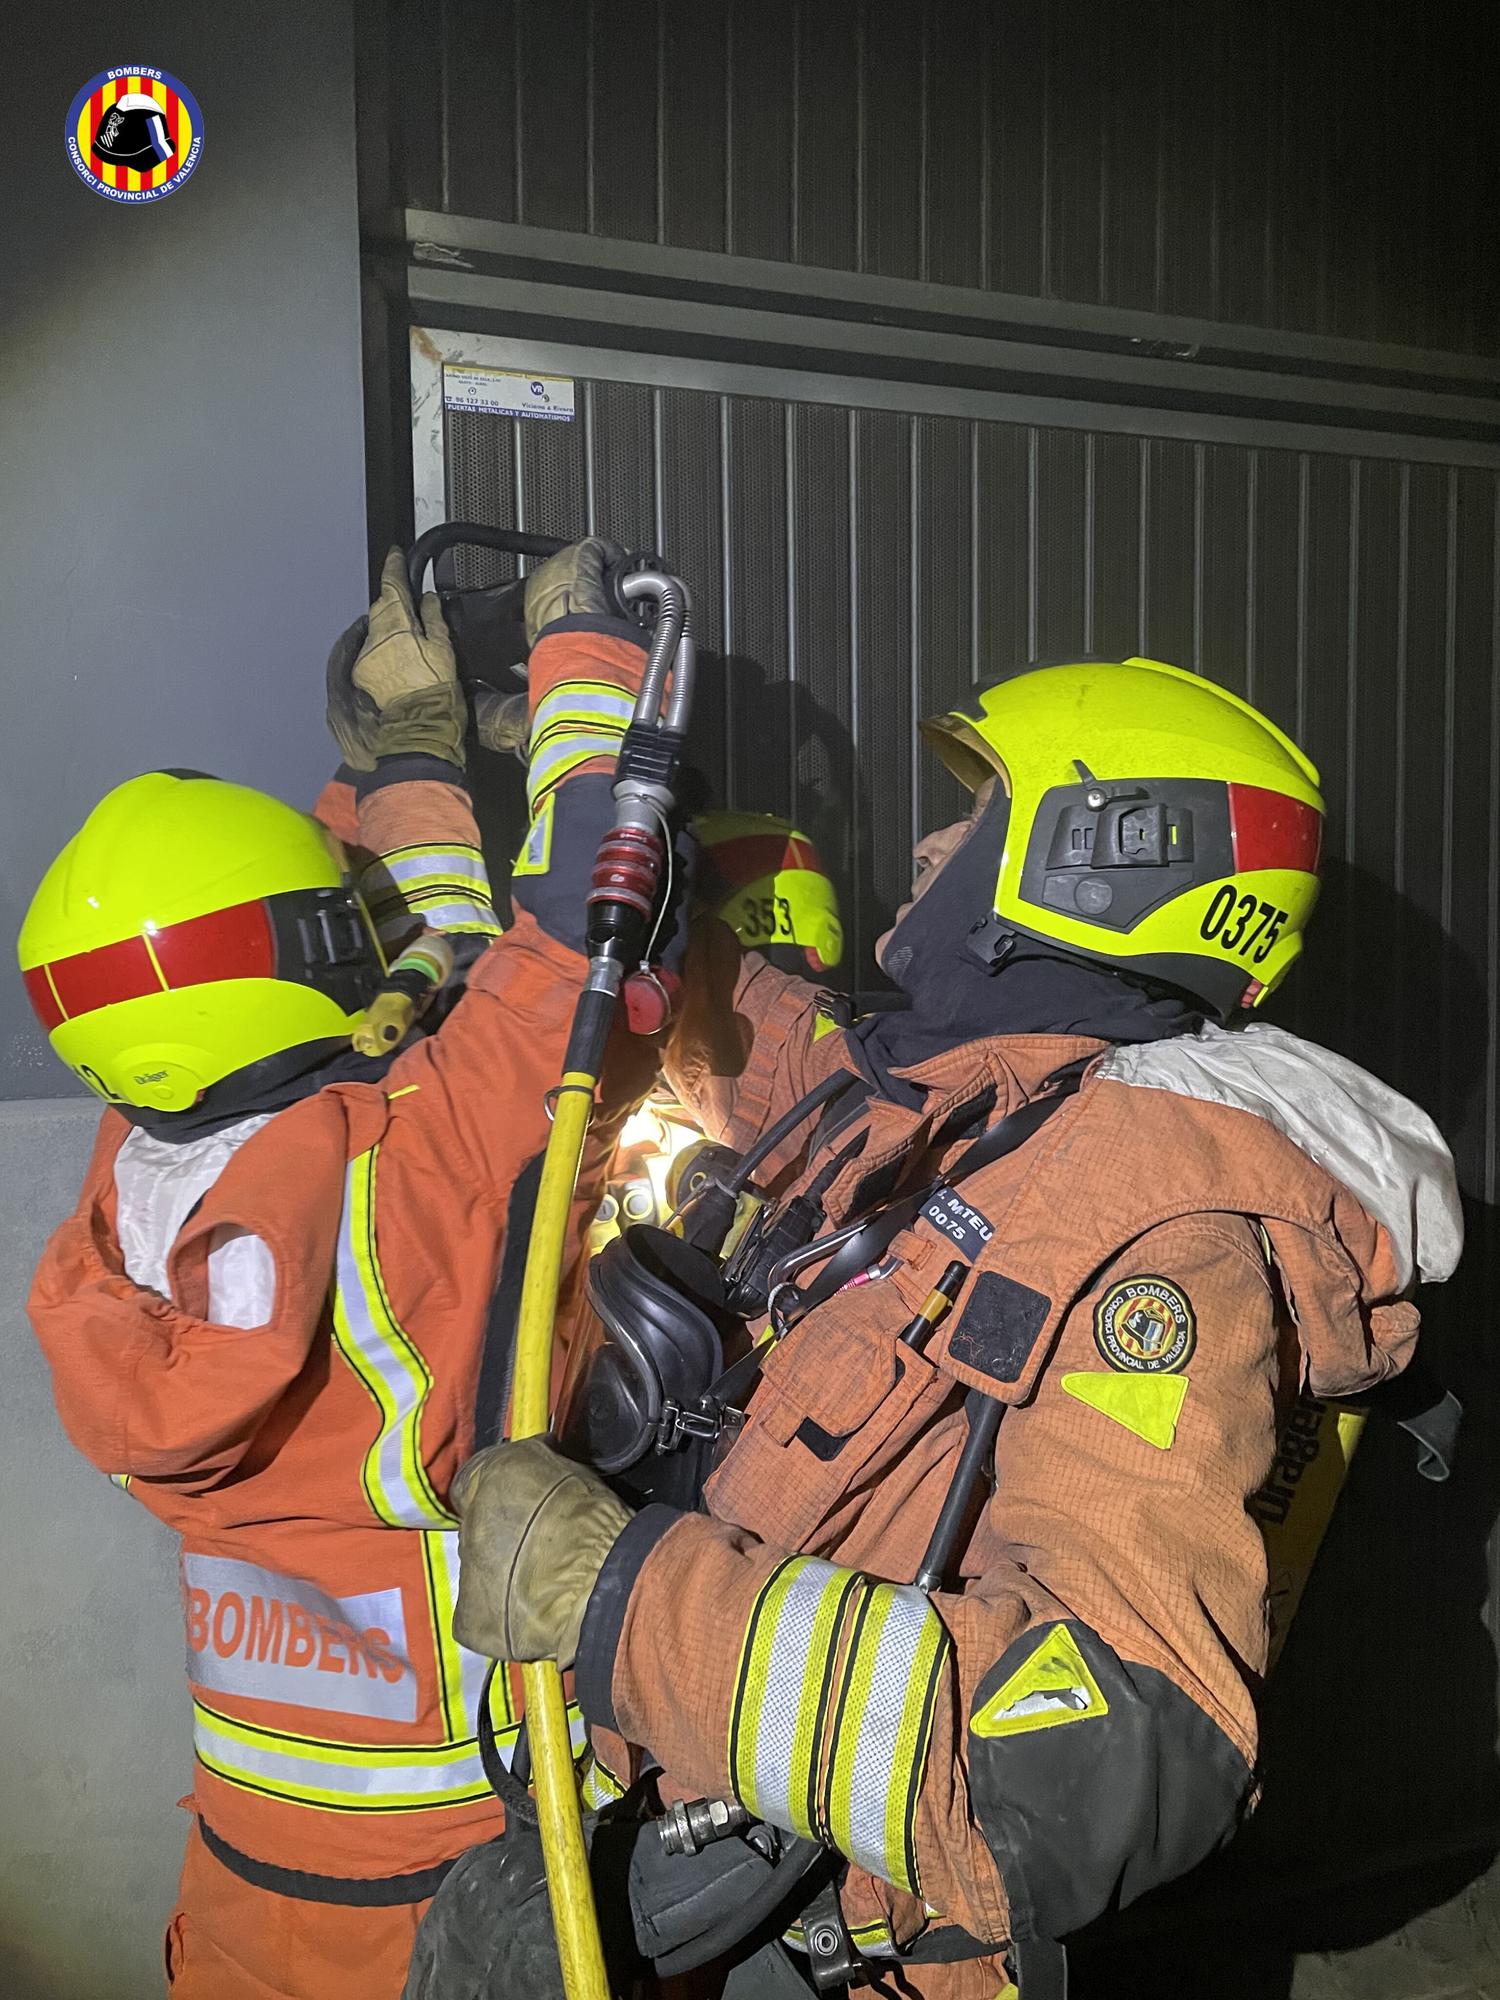 Un incendio en un garaje obliga a evacuar a más de 100 familias en Alaquàs